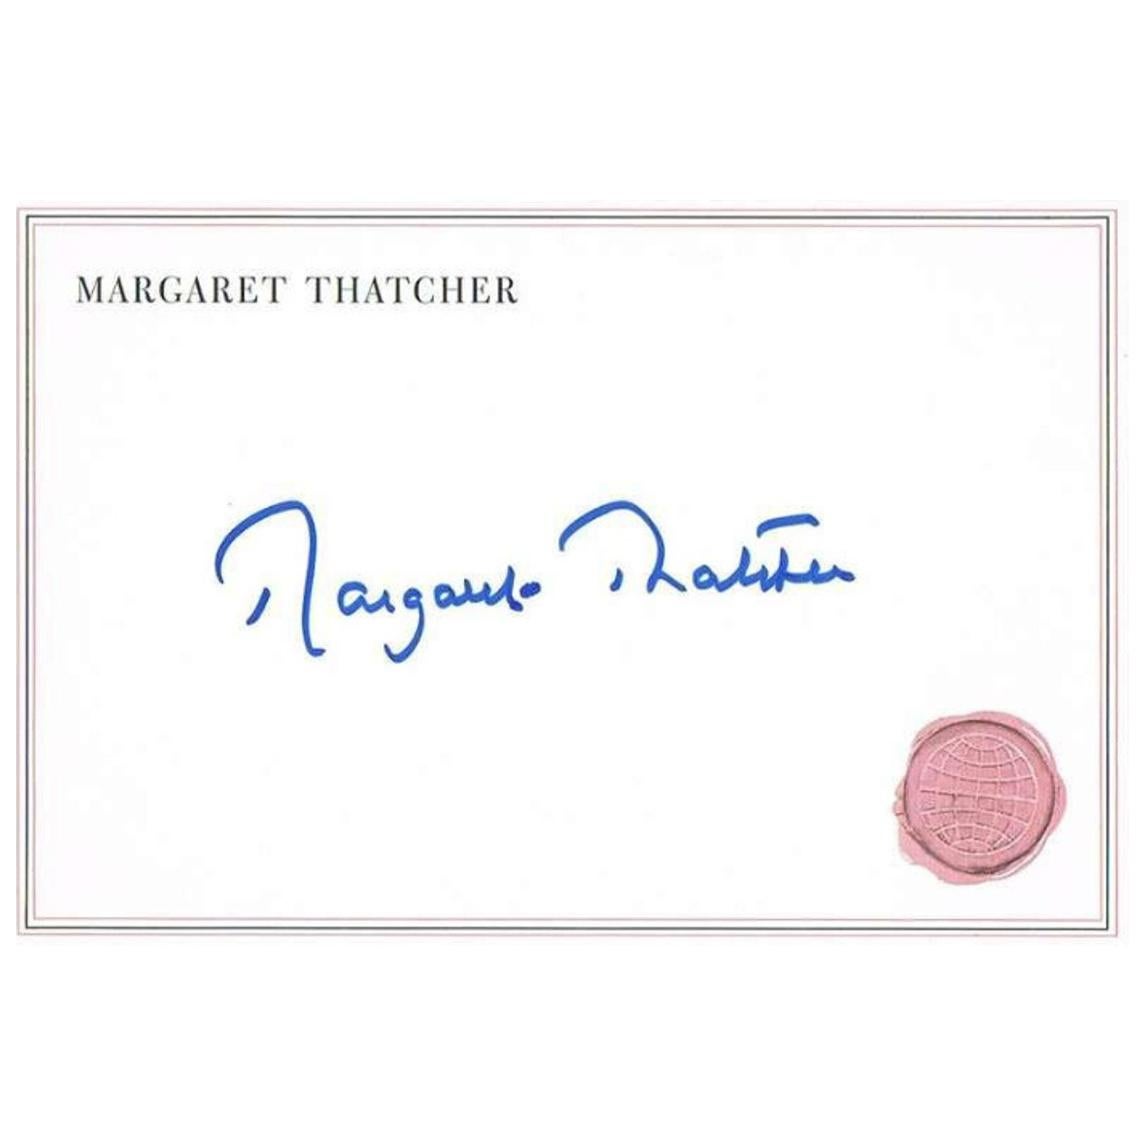 Margaret Thatcher Signature